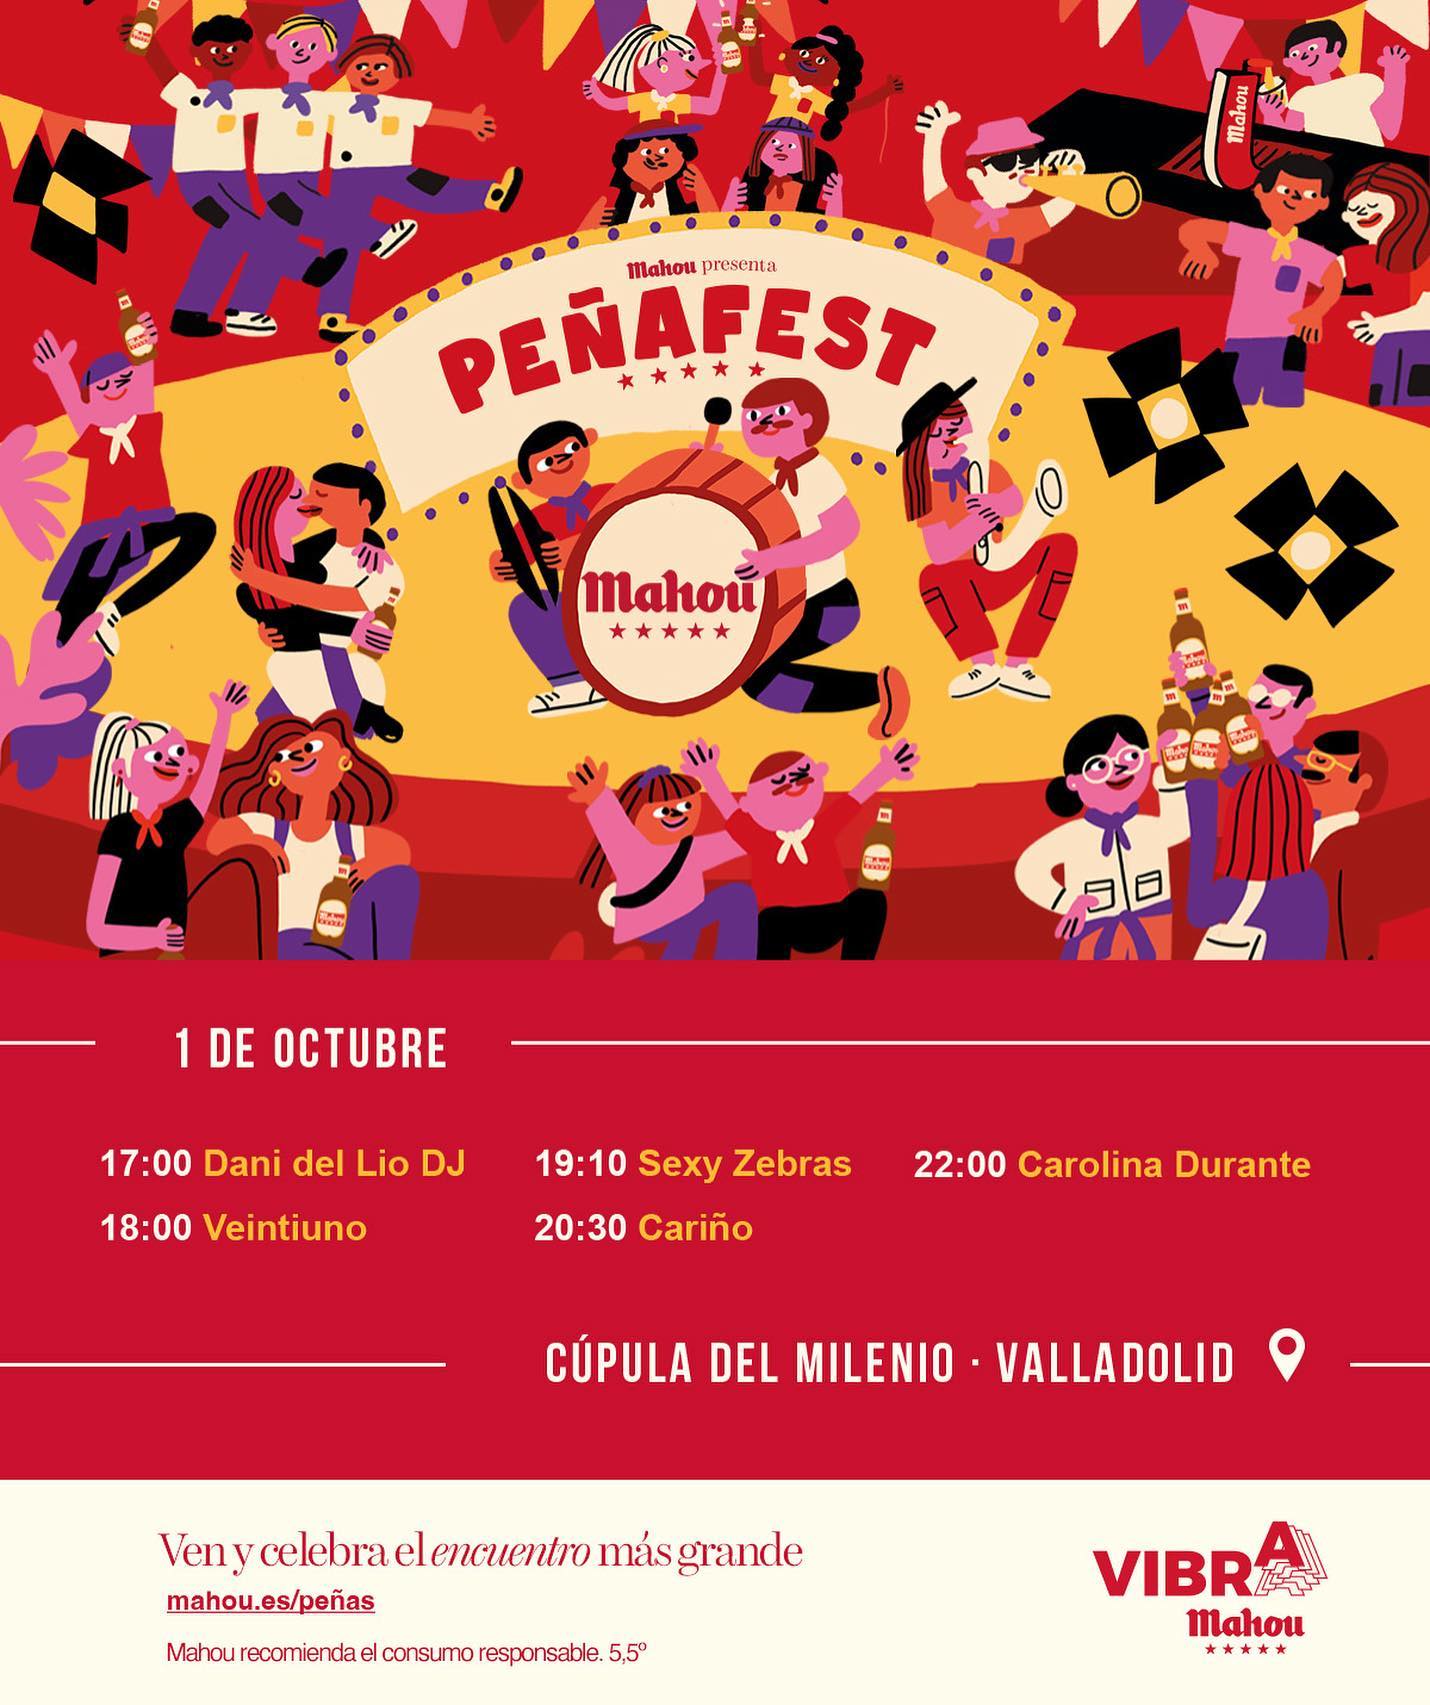 El sabado llega #peñafest de #Vibramahou a #Valladolid - horarios ya disponibles @vibramahou @emergemyc